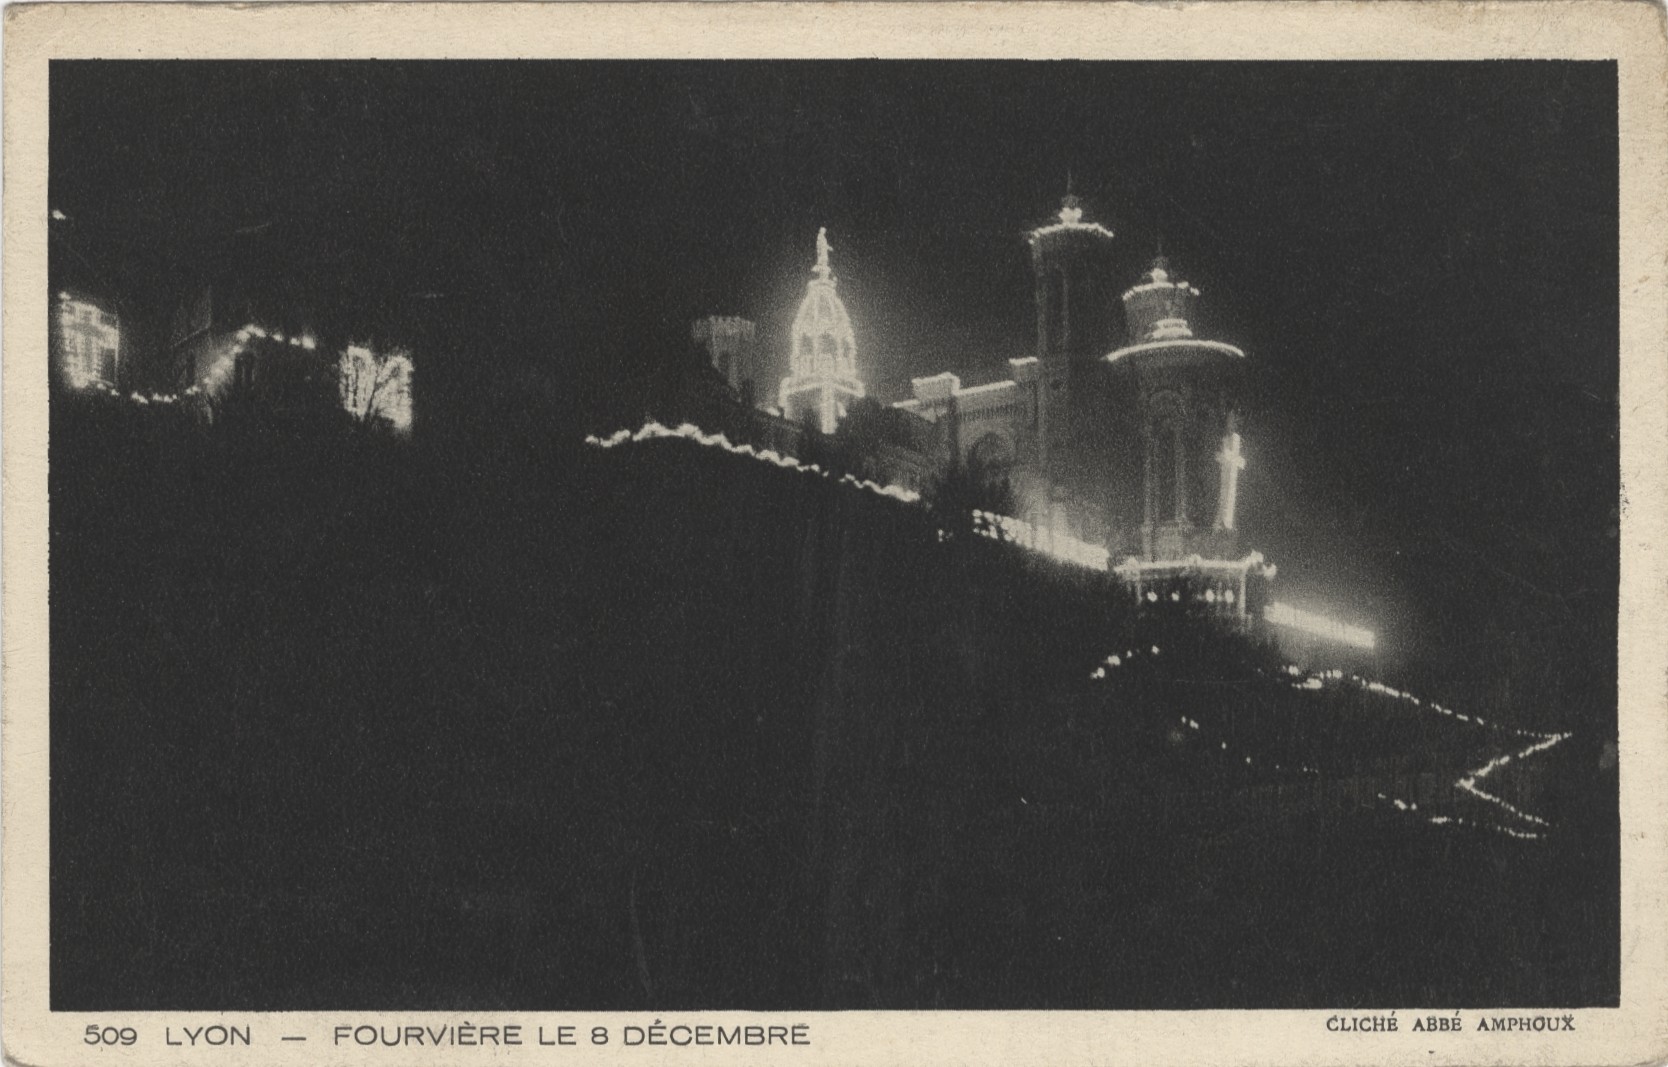 Lyon - Fourvière le 8 décembre : carte postale NB (vers 1910, cote : 4FI/3763)